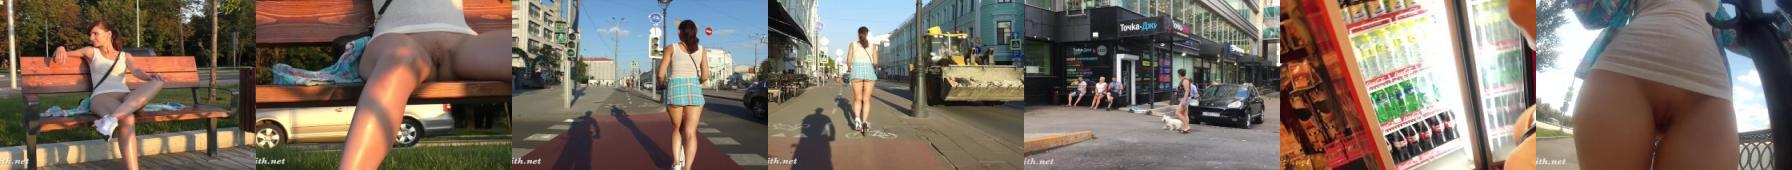 Dziewczyna z ogoloną cipą jeździ po mieście hulajnogą, w samej koszulce, bez majtek